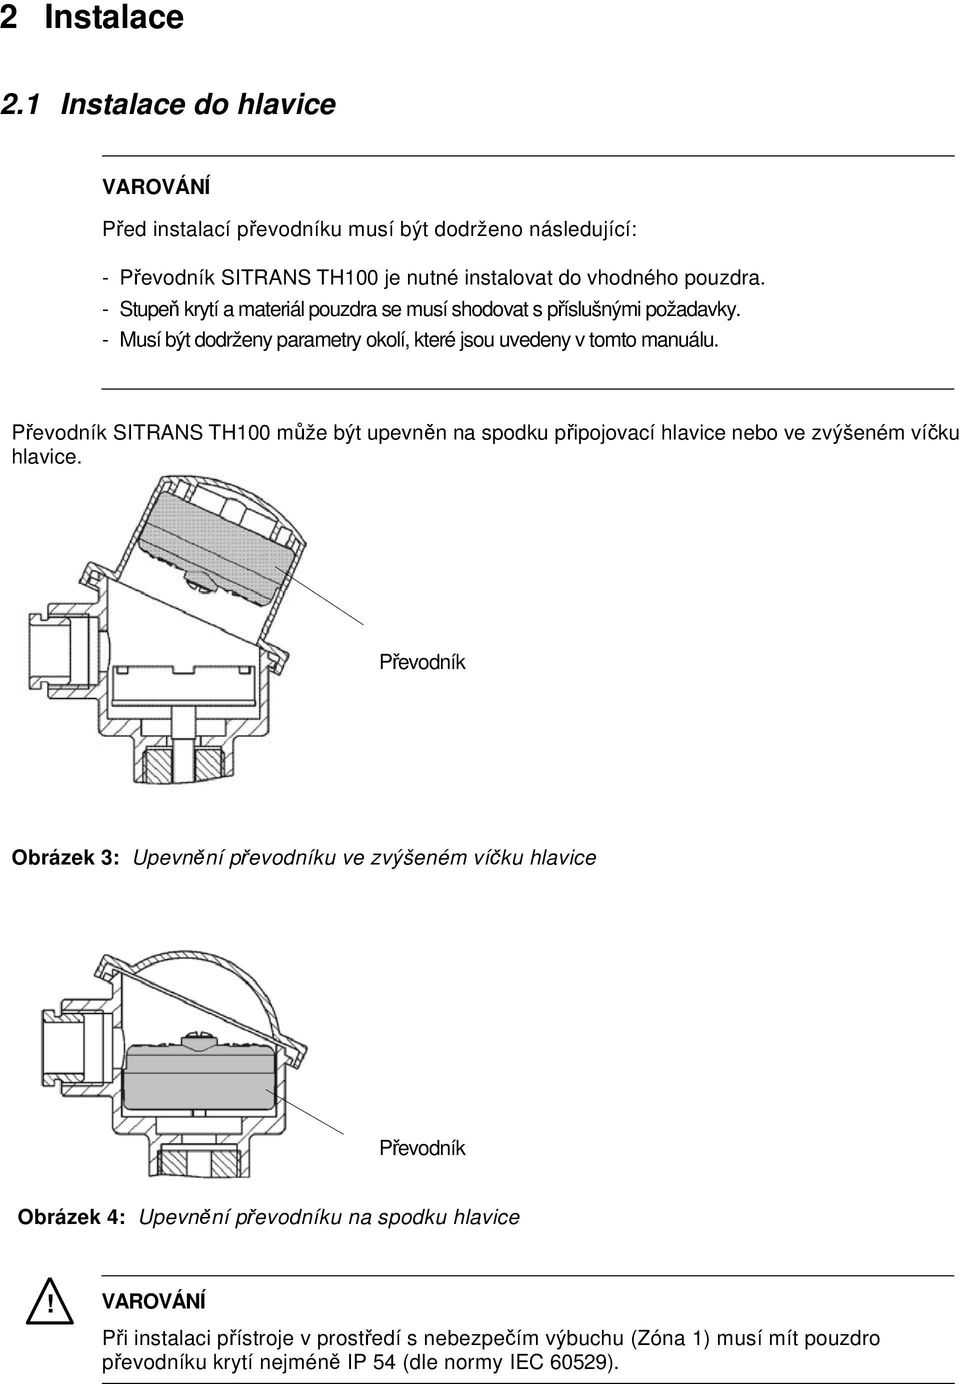 Převodník SITRANS TH100 může být upevněn na spodku připojovací hlavice nebo ve zvýšeném víčku hlavice.